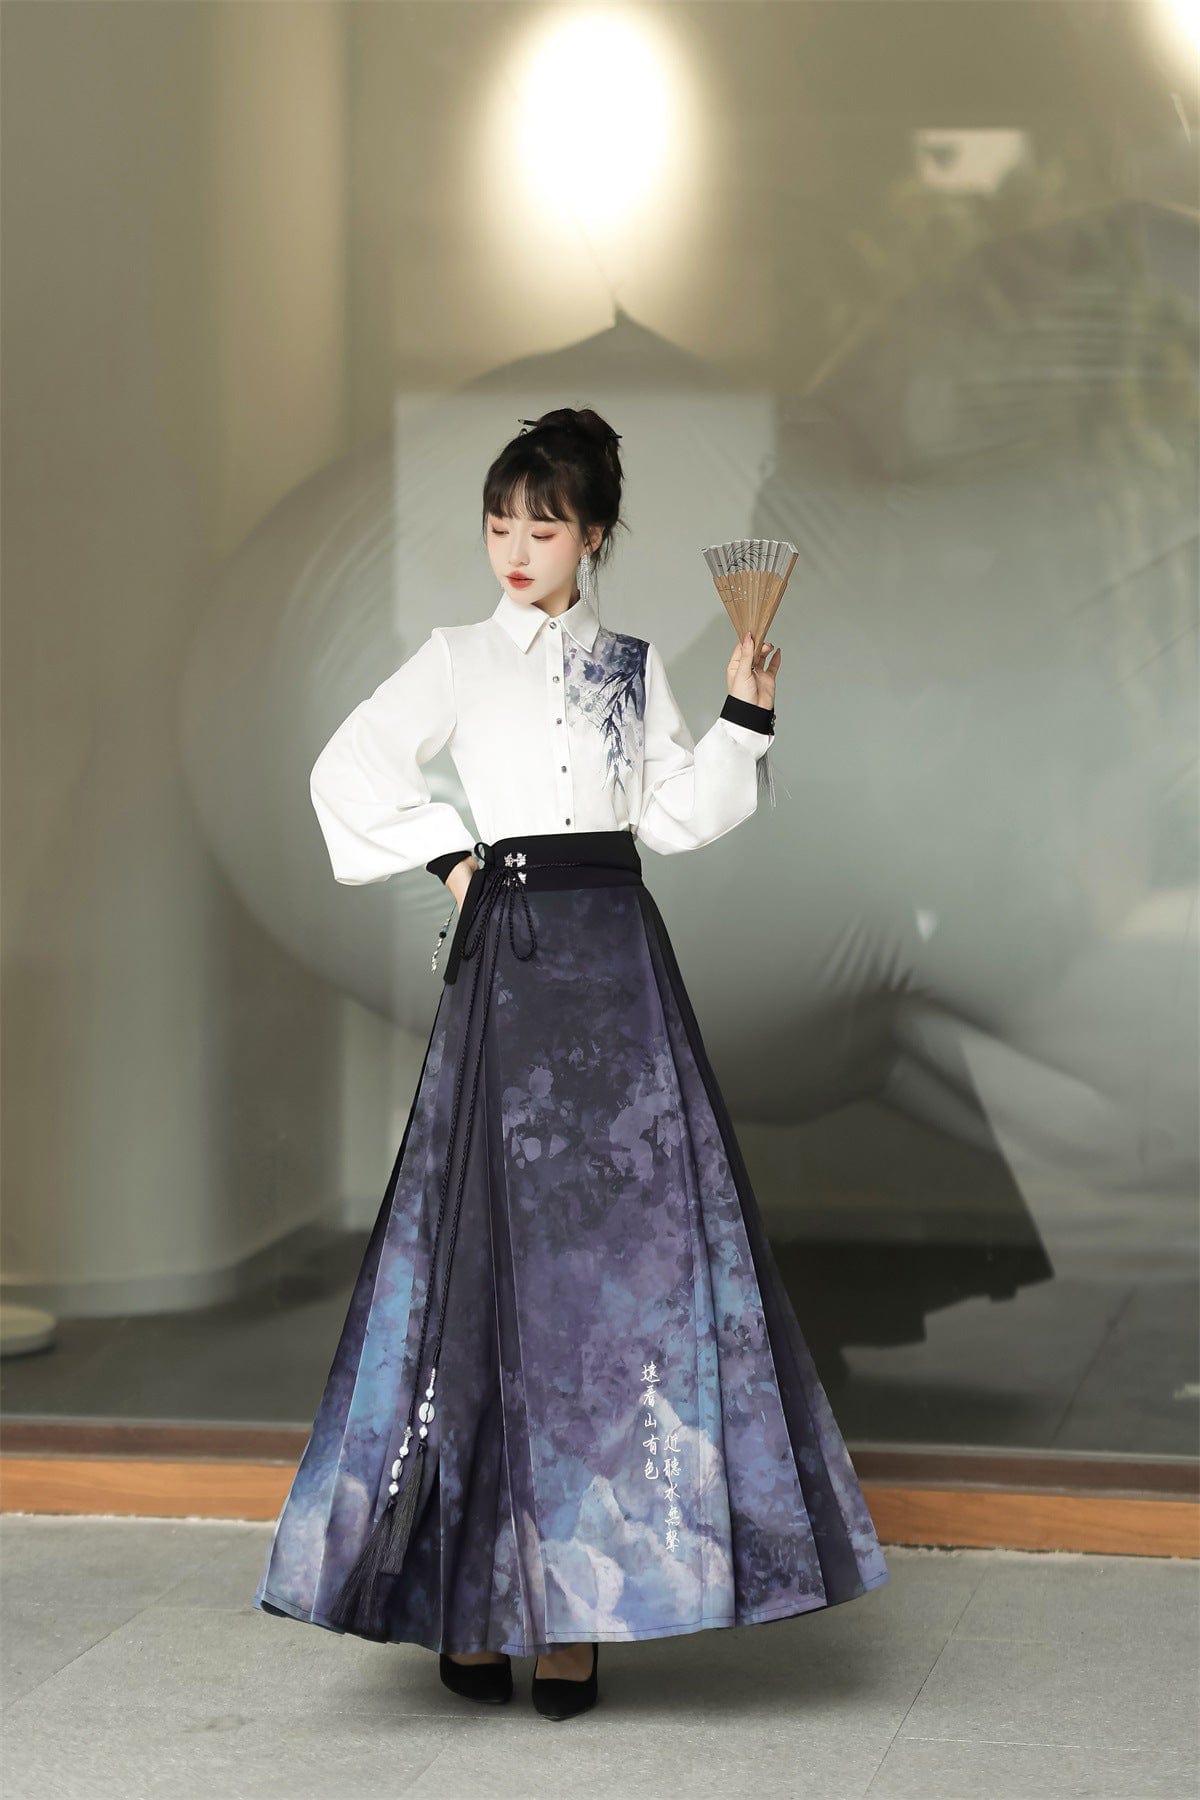 雪衣阁汉服SheyGo Hanfu - 北美最受欢迎的一站式汉服采购平台– 雪衣阁 